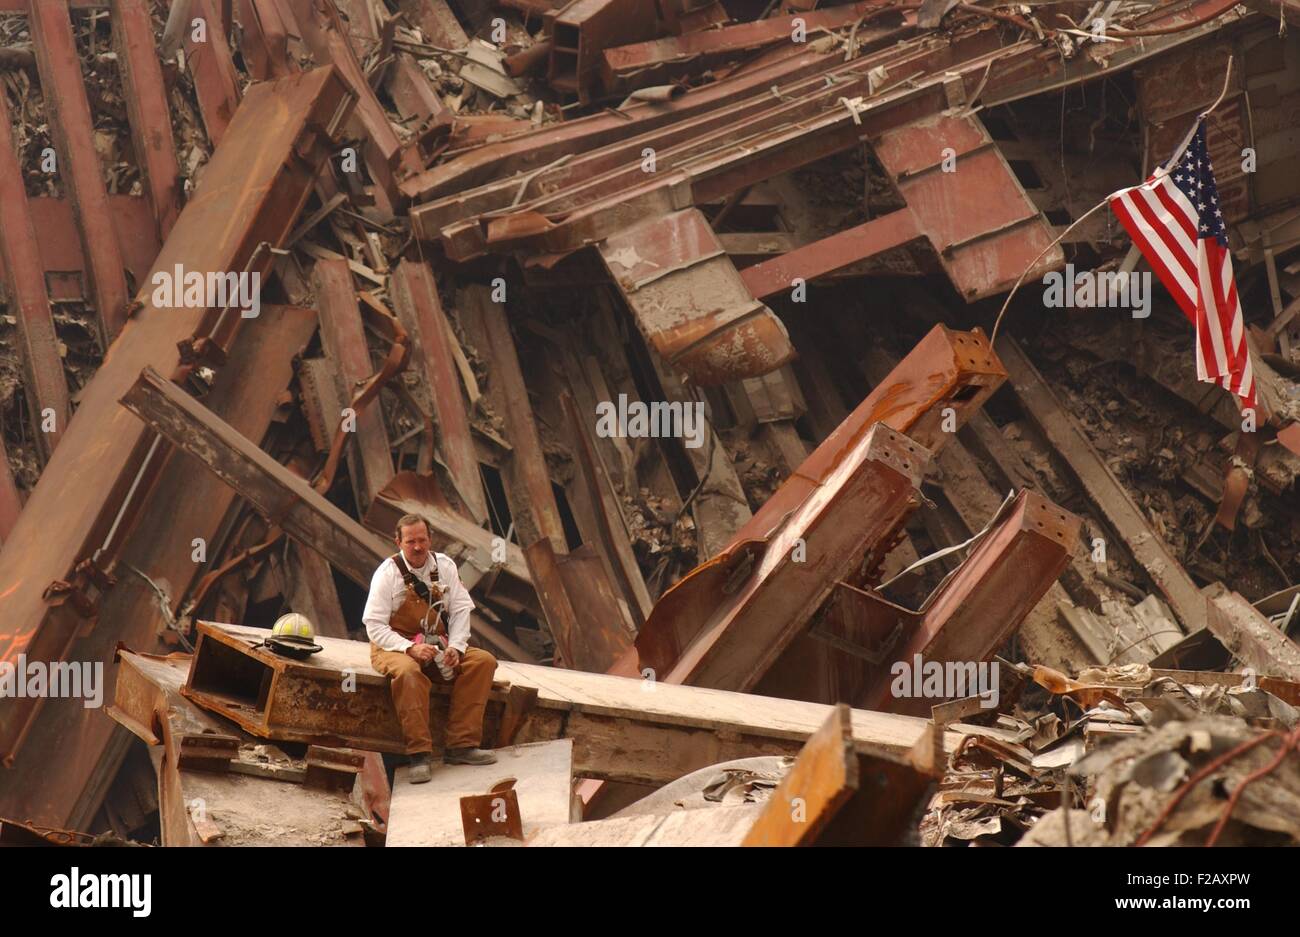 Solo pompiere seduto su una trave nel relitto del World Trade Center, Sett. 28, 2001. La città di New York, dopo l'11 settembre 2001 attacchi terroristici. (BSLOC 2015 2 109) Foto Stock